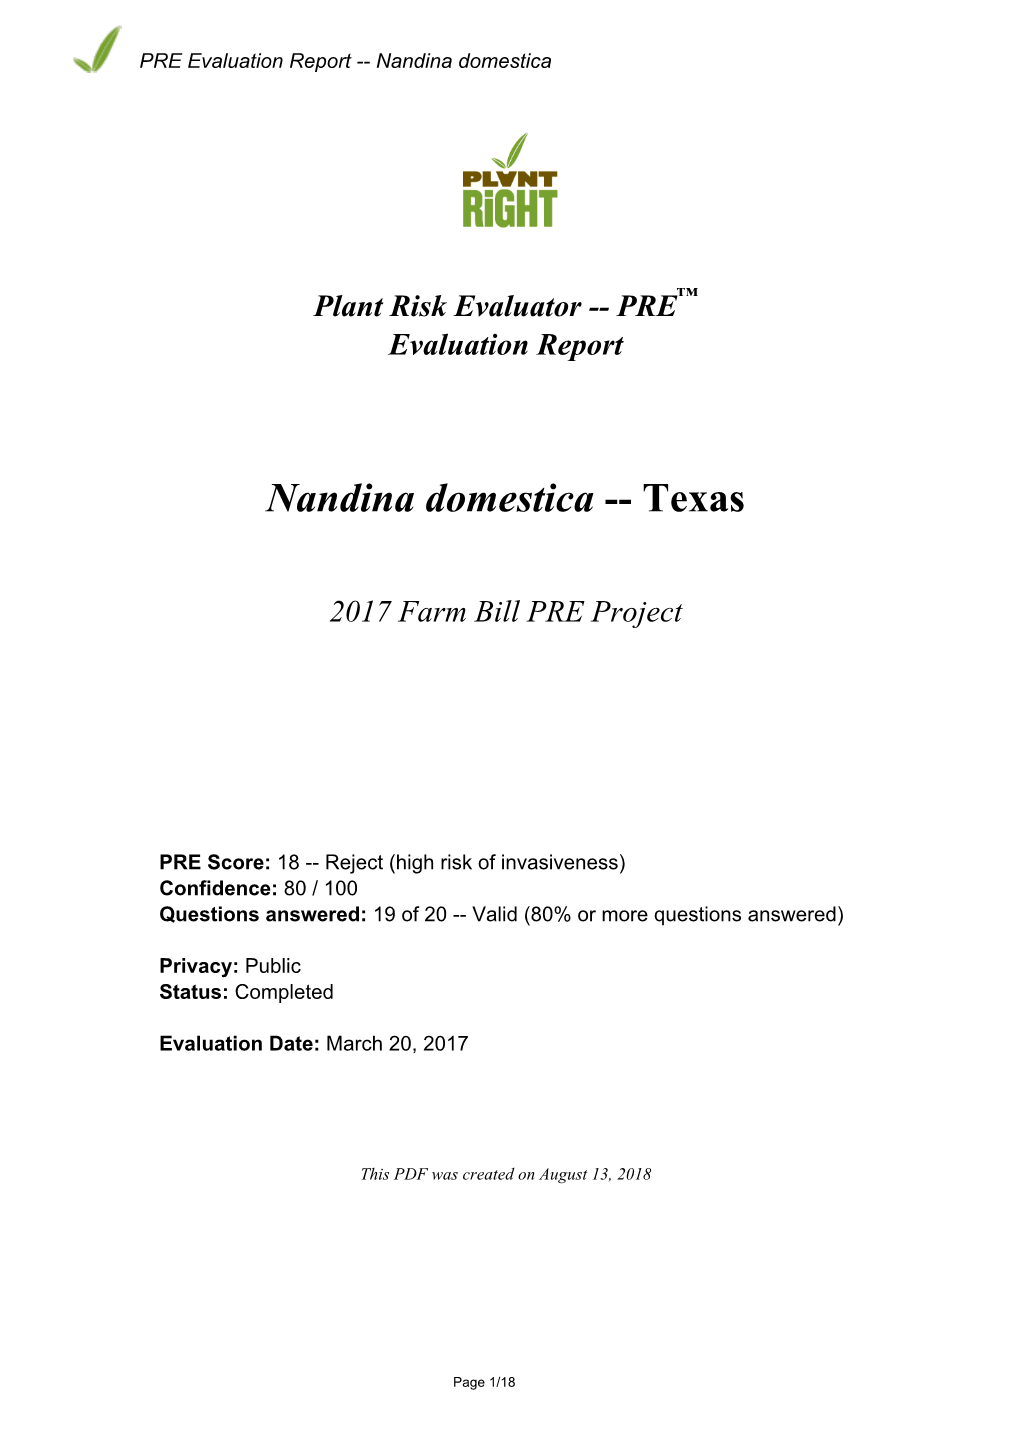 PRE Evaluation Report for Nandina Domestica